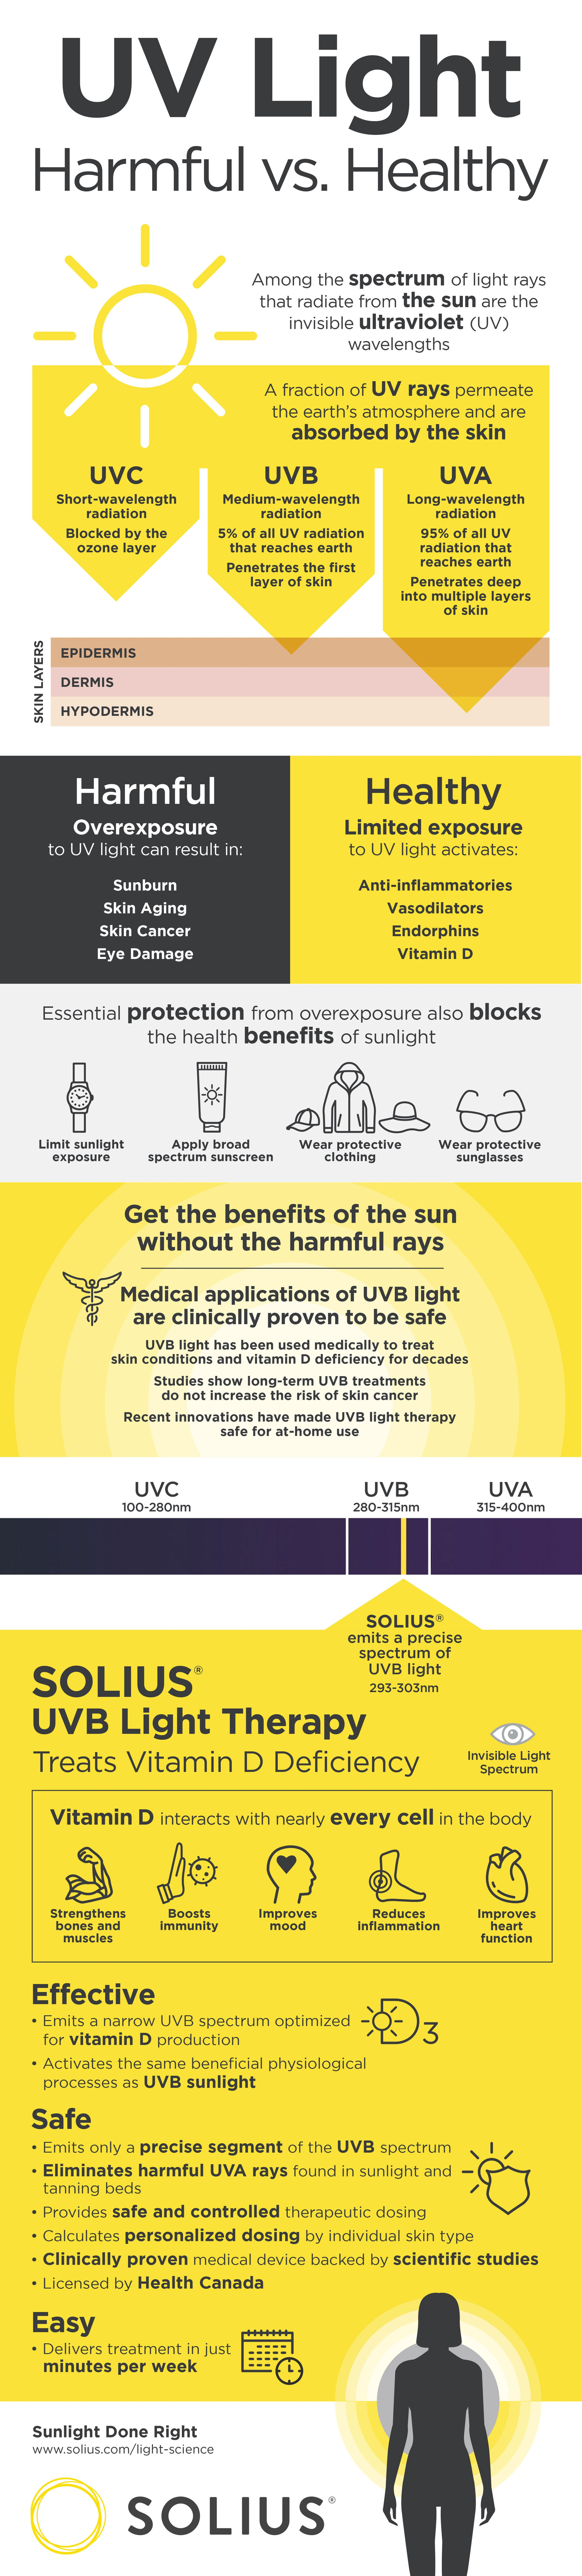 Is UV light good for mental health?